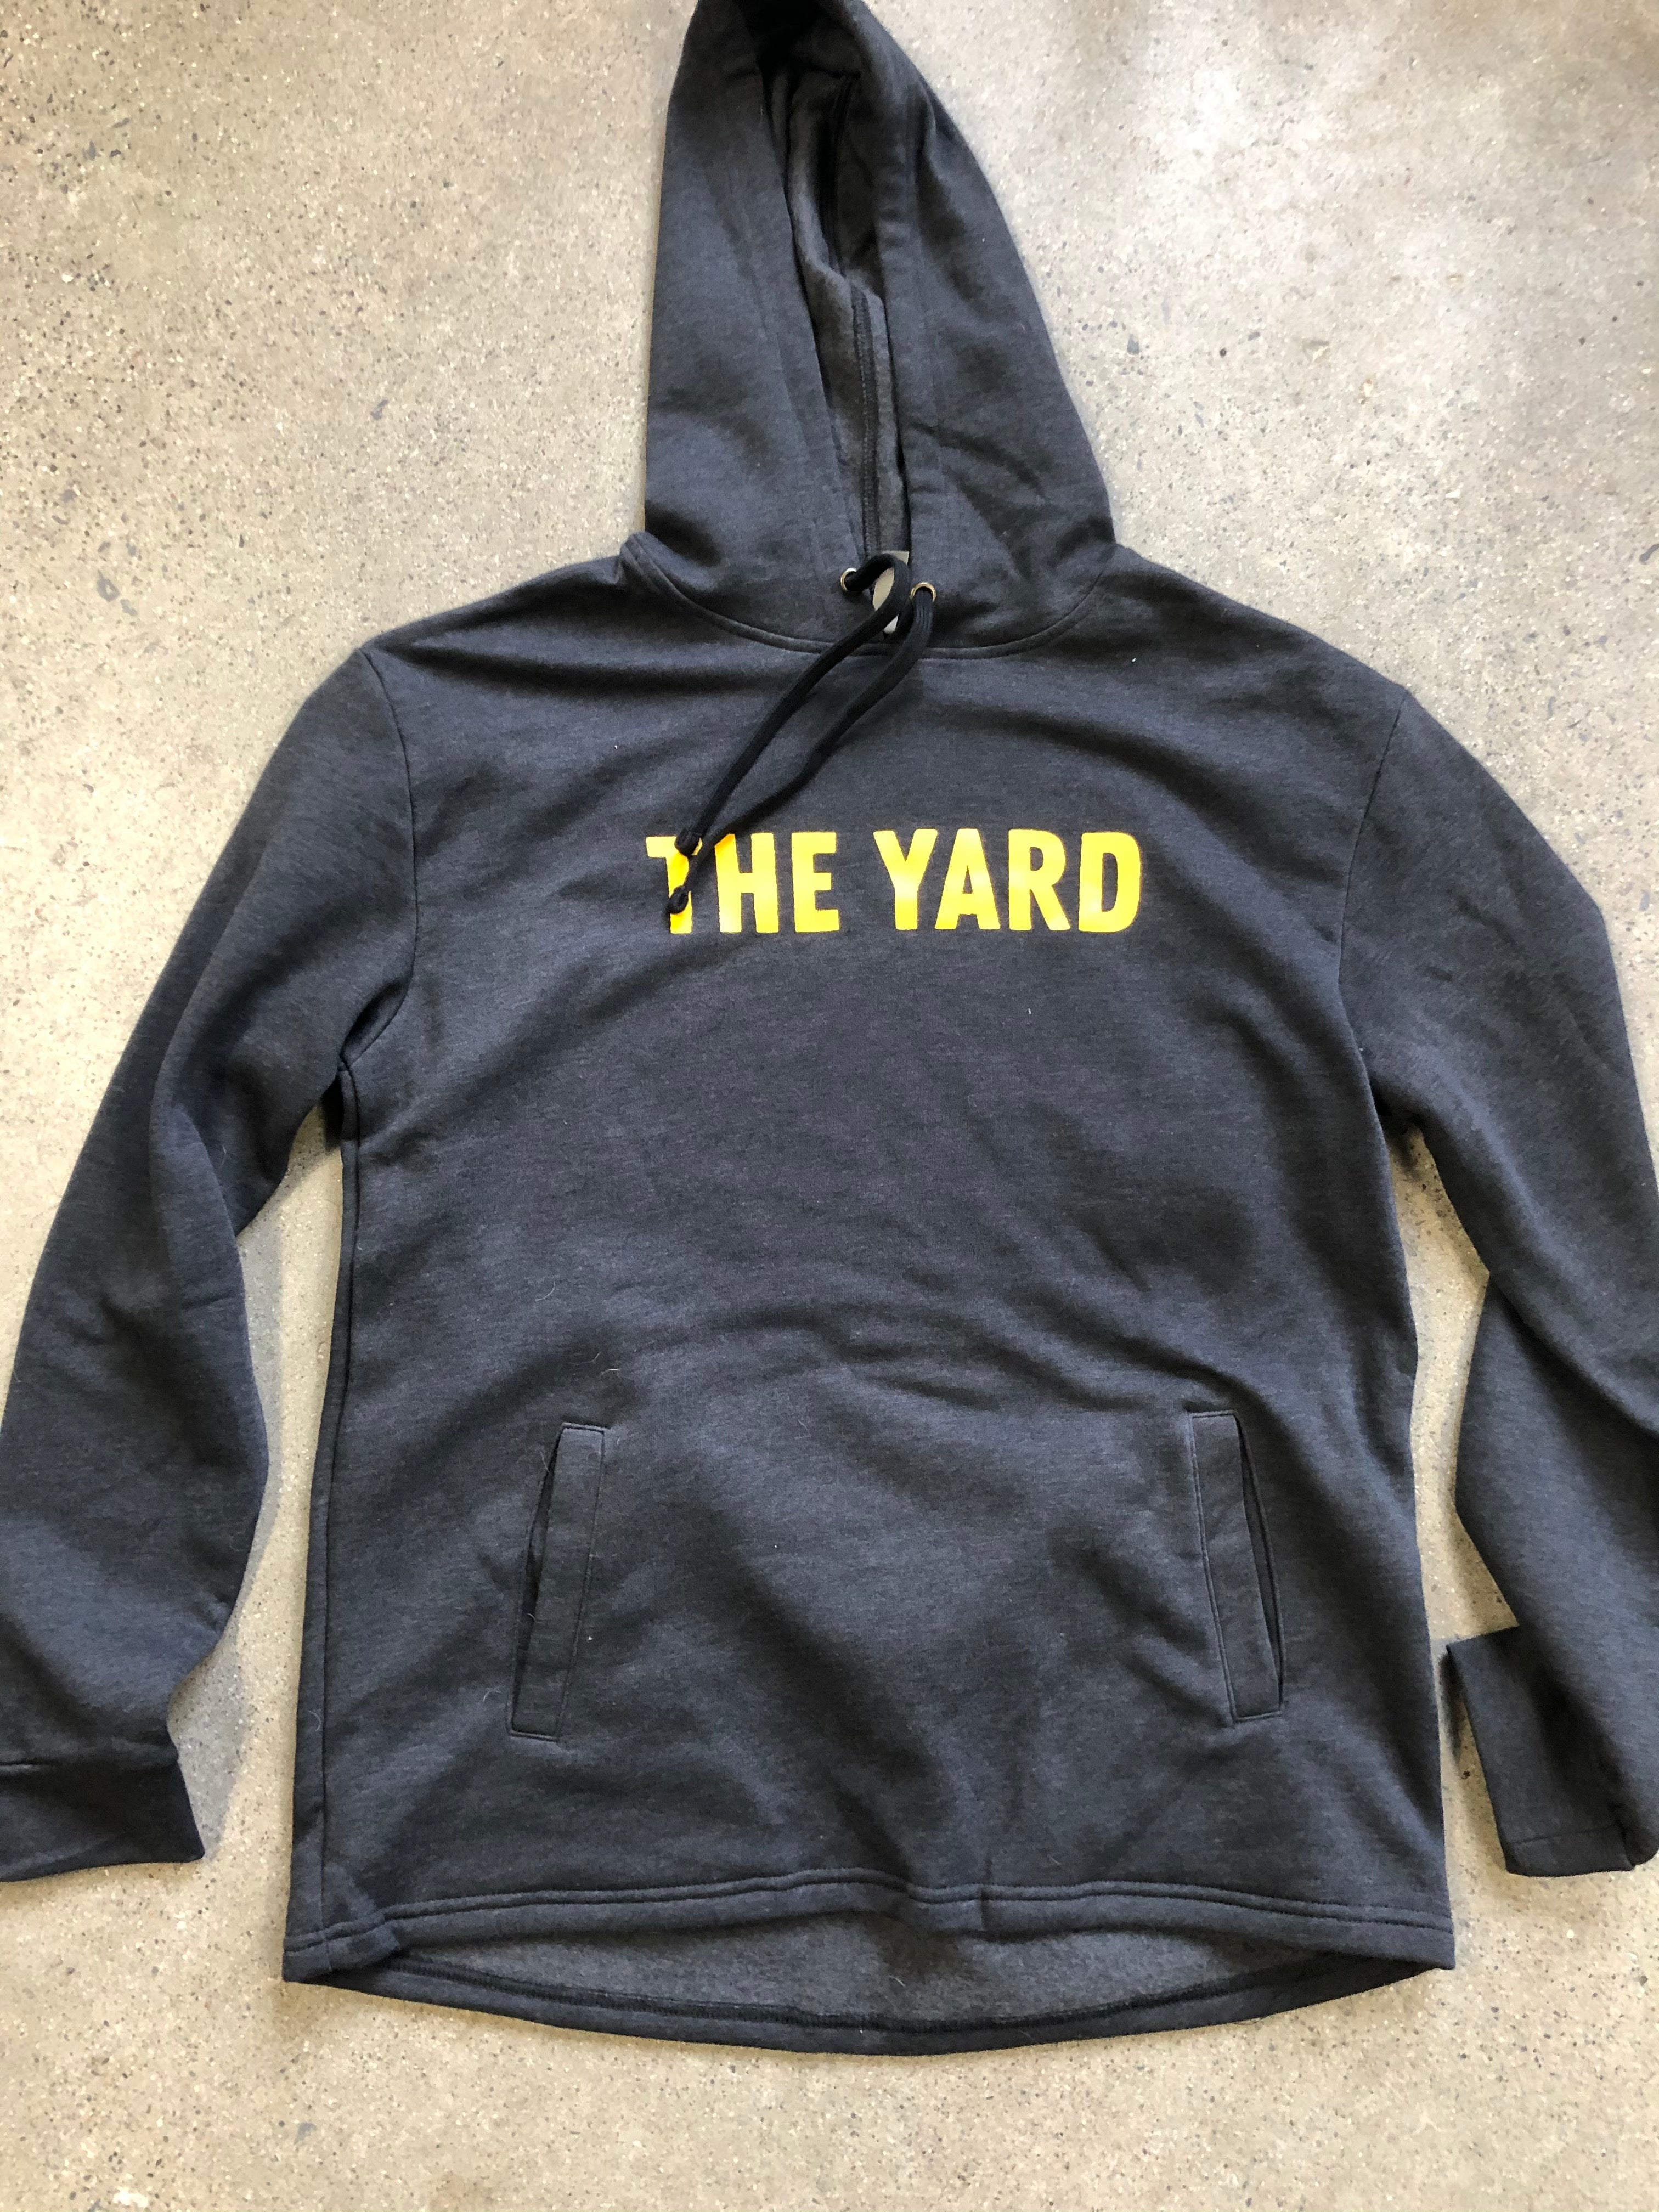 The Yard Hoodie - Adult